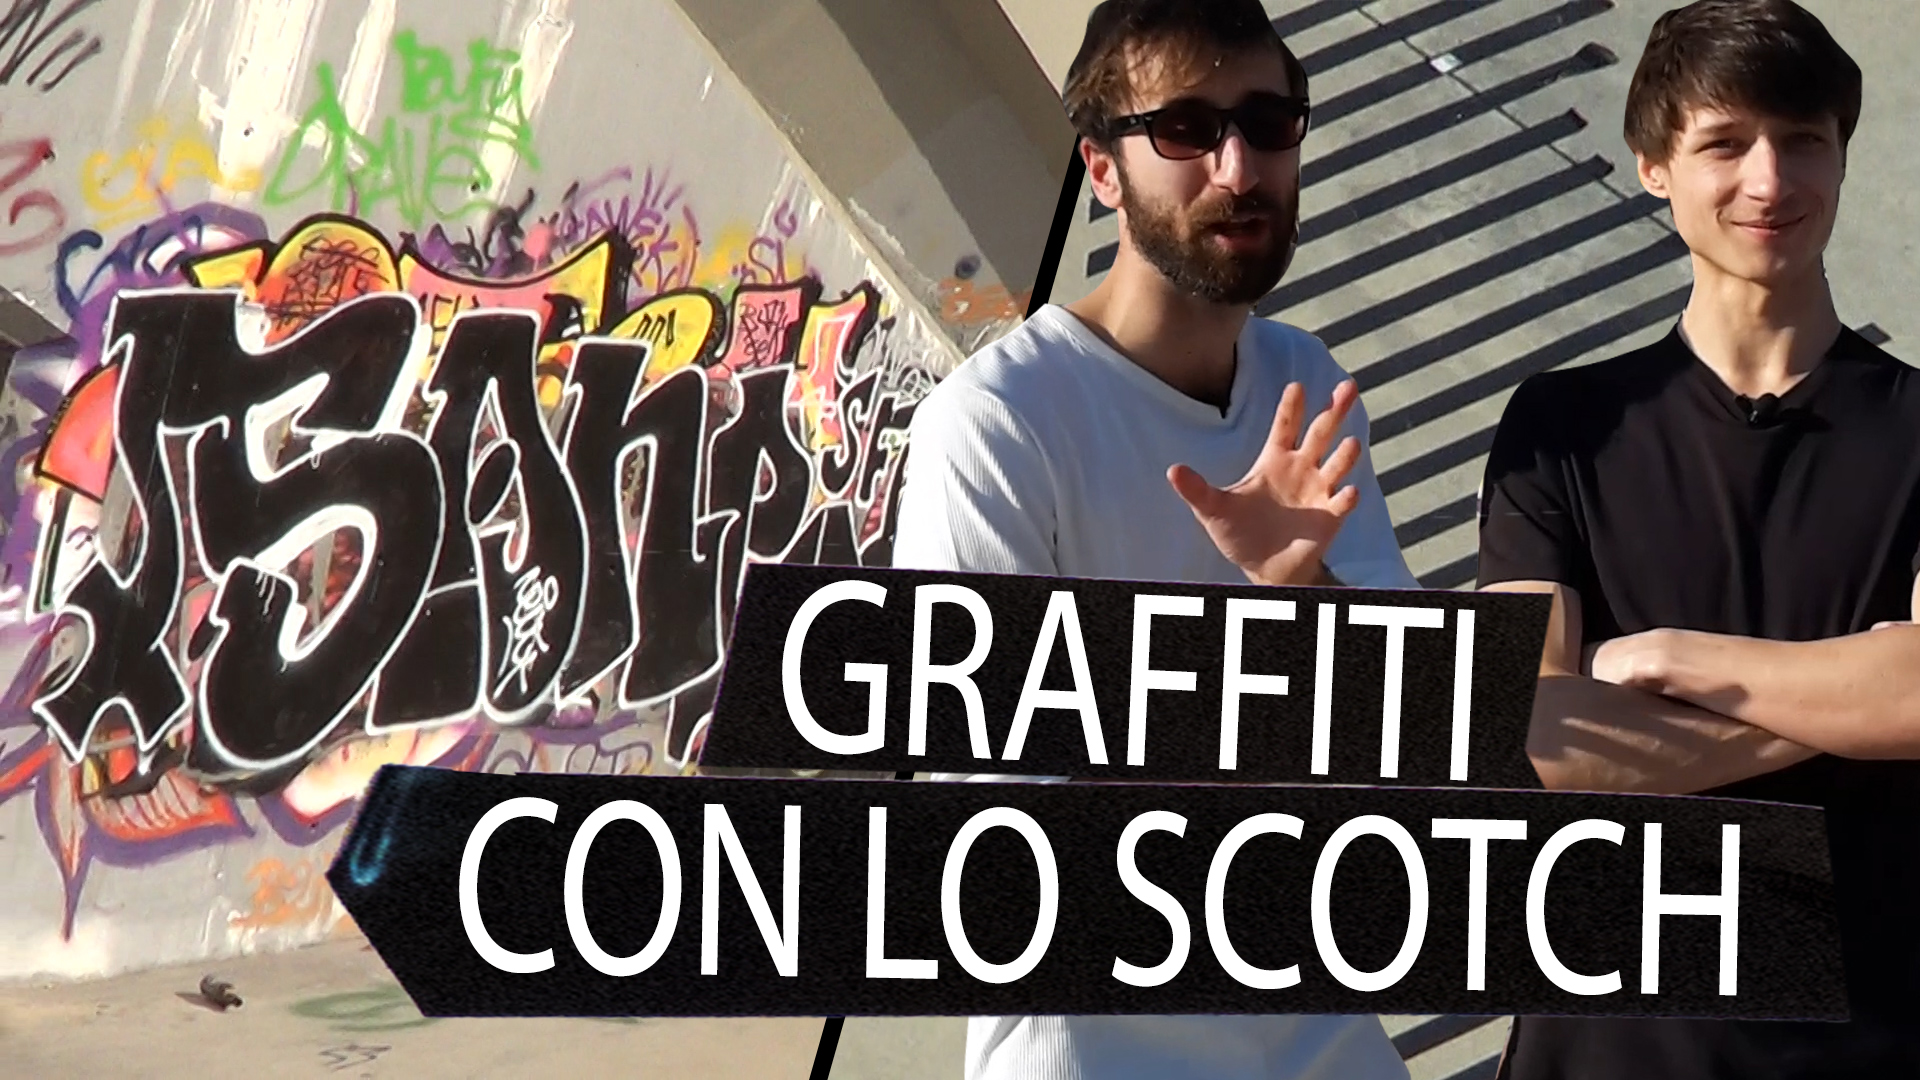 Roma in degrado? Largo ai graffitari antigraffiti